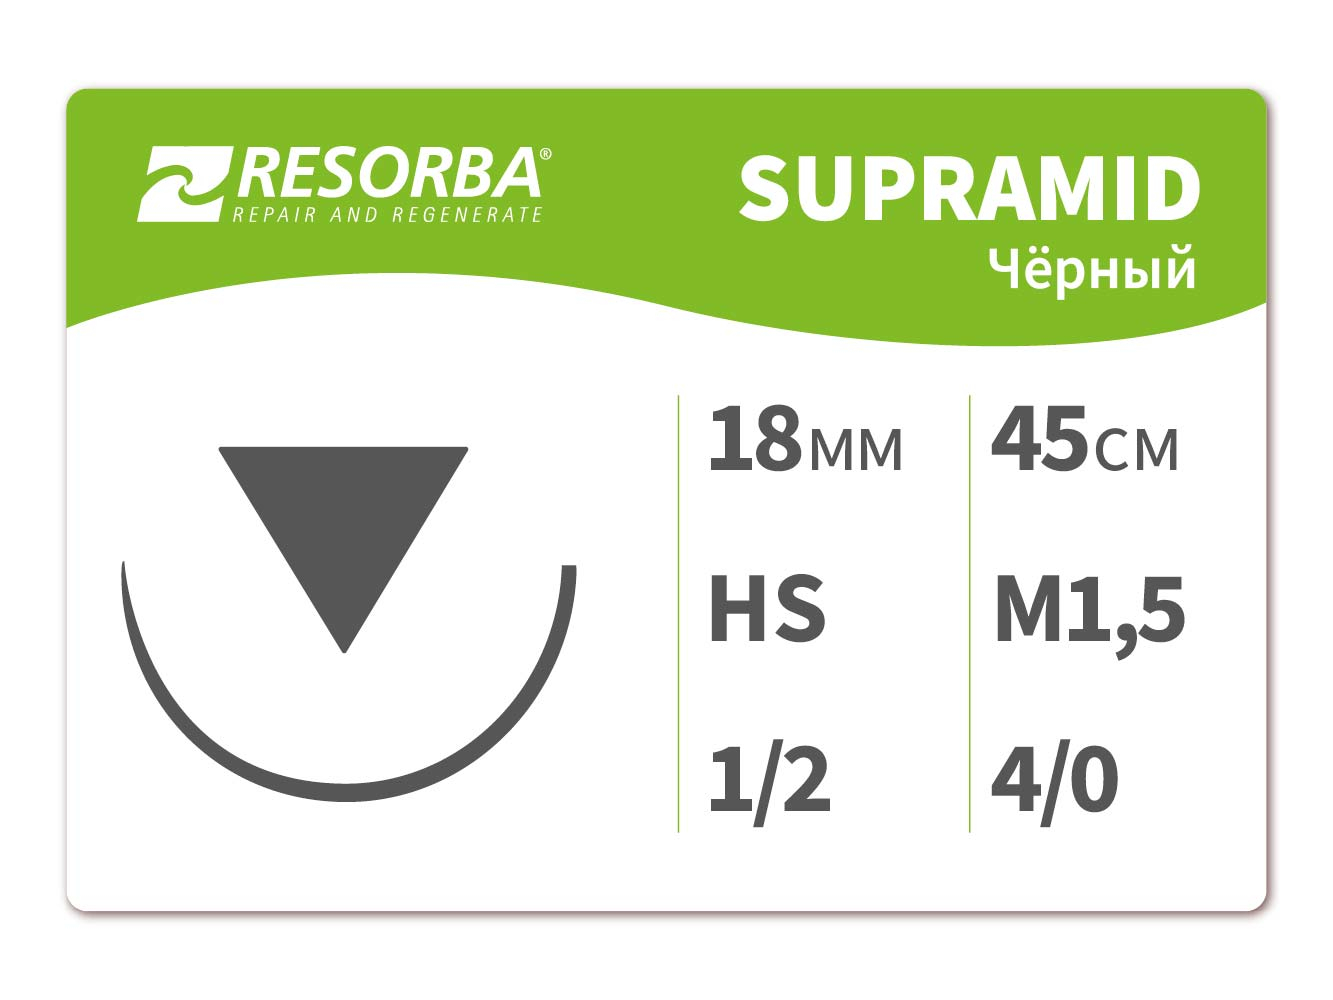 Супрамид черный М 1.5 (4.0) 45 см, HS.6112, RESORBA (Германия)